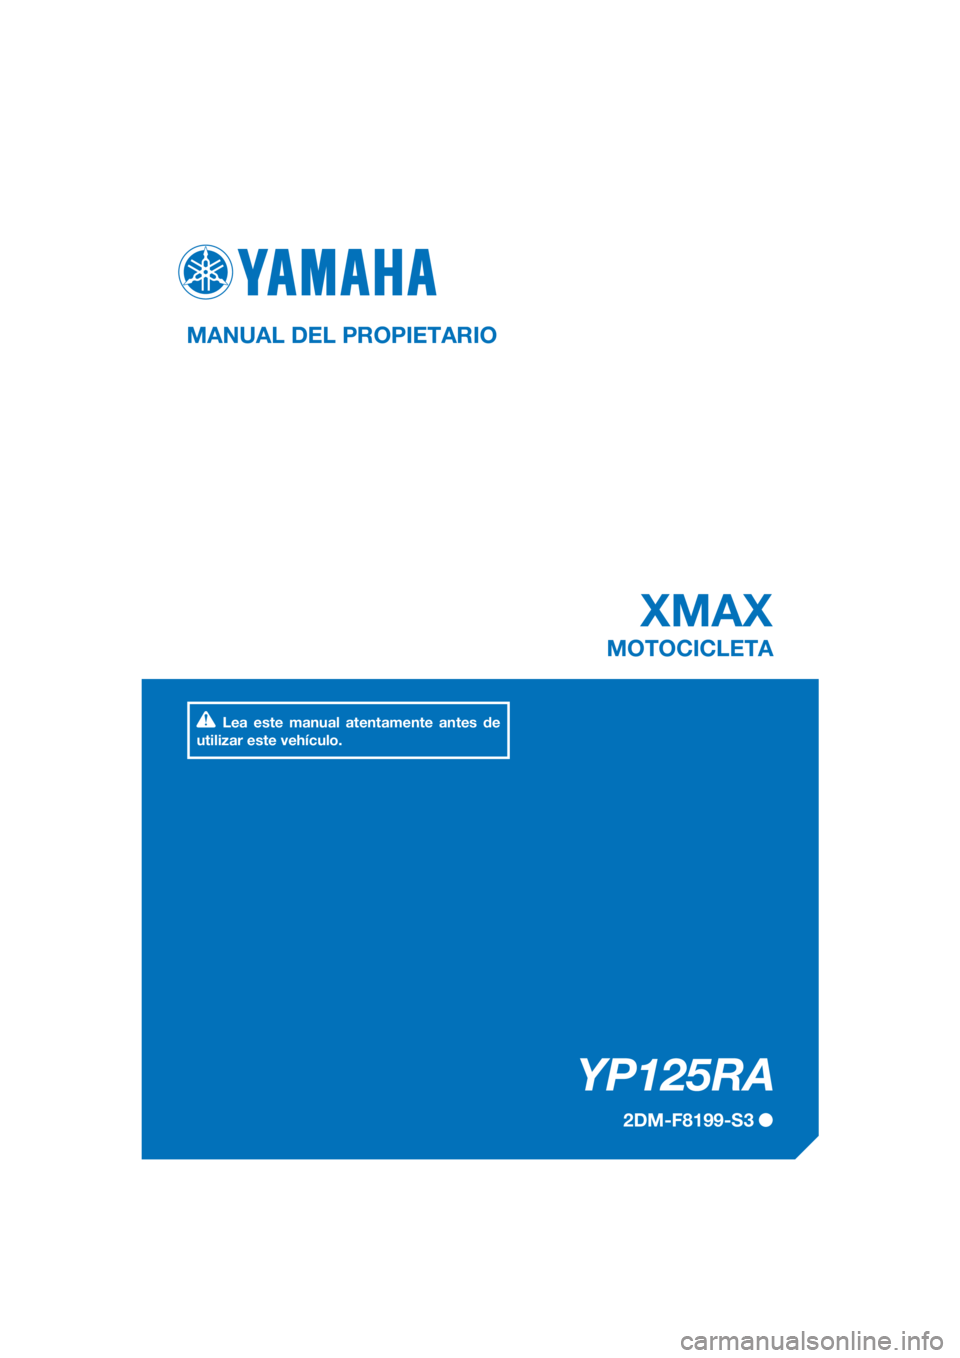 YAMAHA XMAX 125 2017  Bruksanvisningar (in Swedish) PANTONE285C
YP125RA
XMAX
MANUAL DEL PROPIETARIO
2DM-F8199-S3
MOTOCICLETA
Lea este manual atentamente antes de 
utilizar este vehículo.
[Spanish  (S)] 